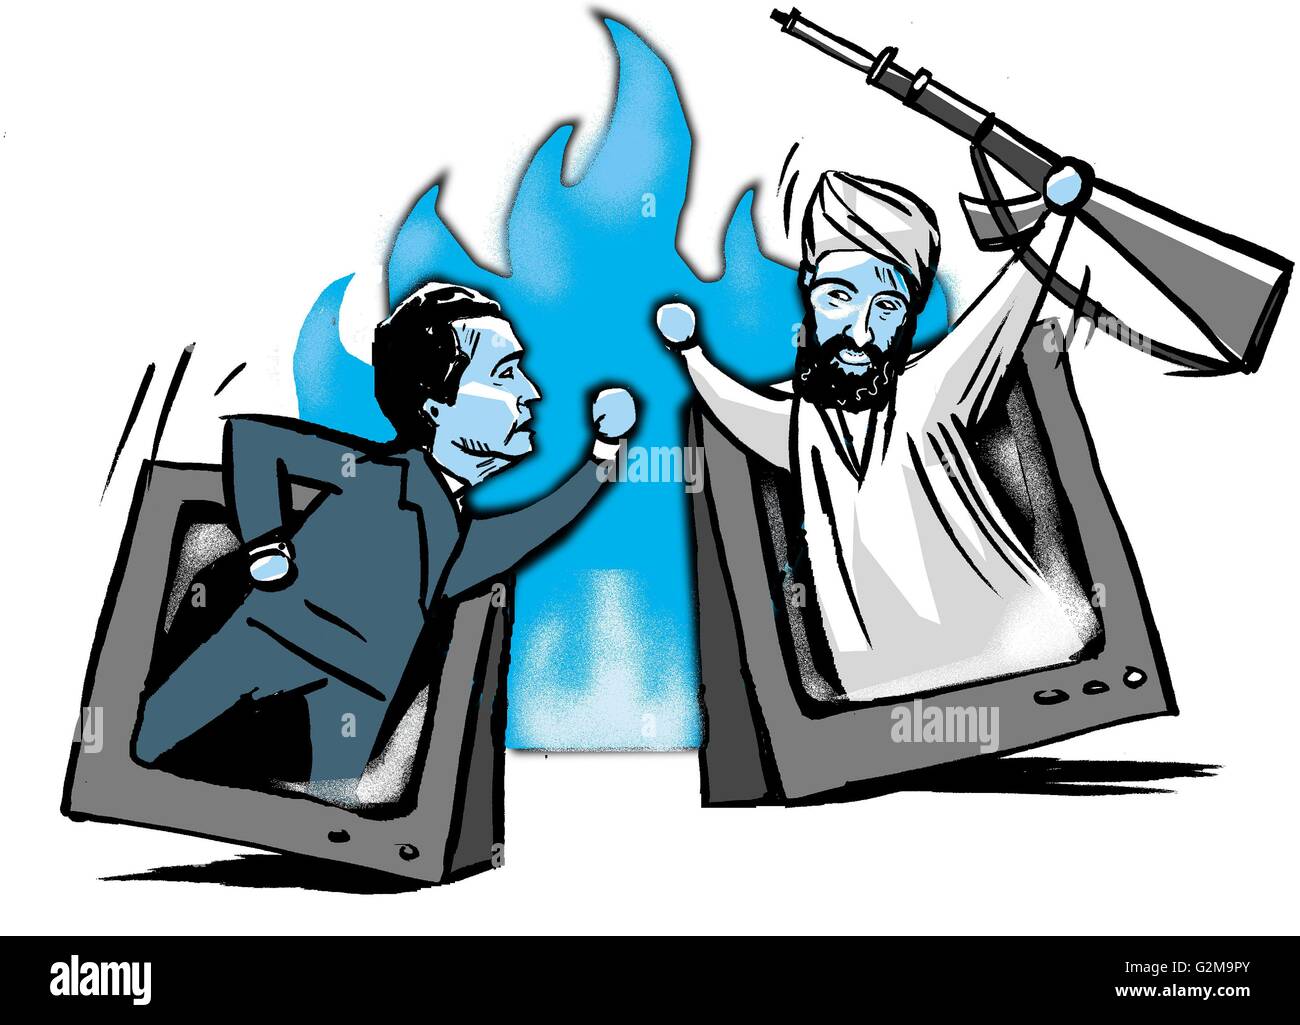 Uomo politico e islam lotta estremista spuntavano da schermi televisivi Foto Stock